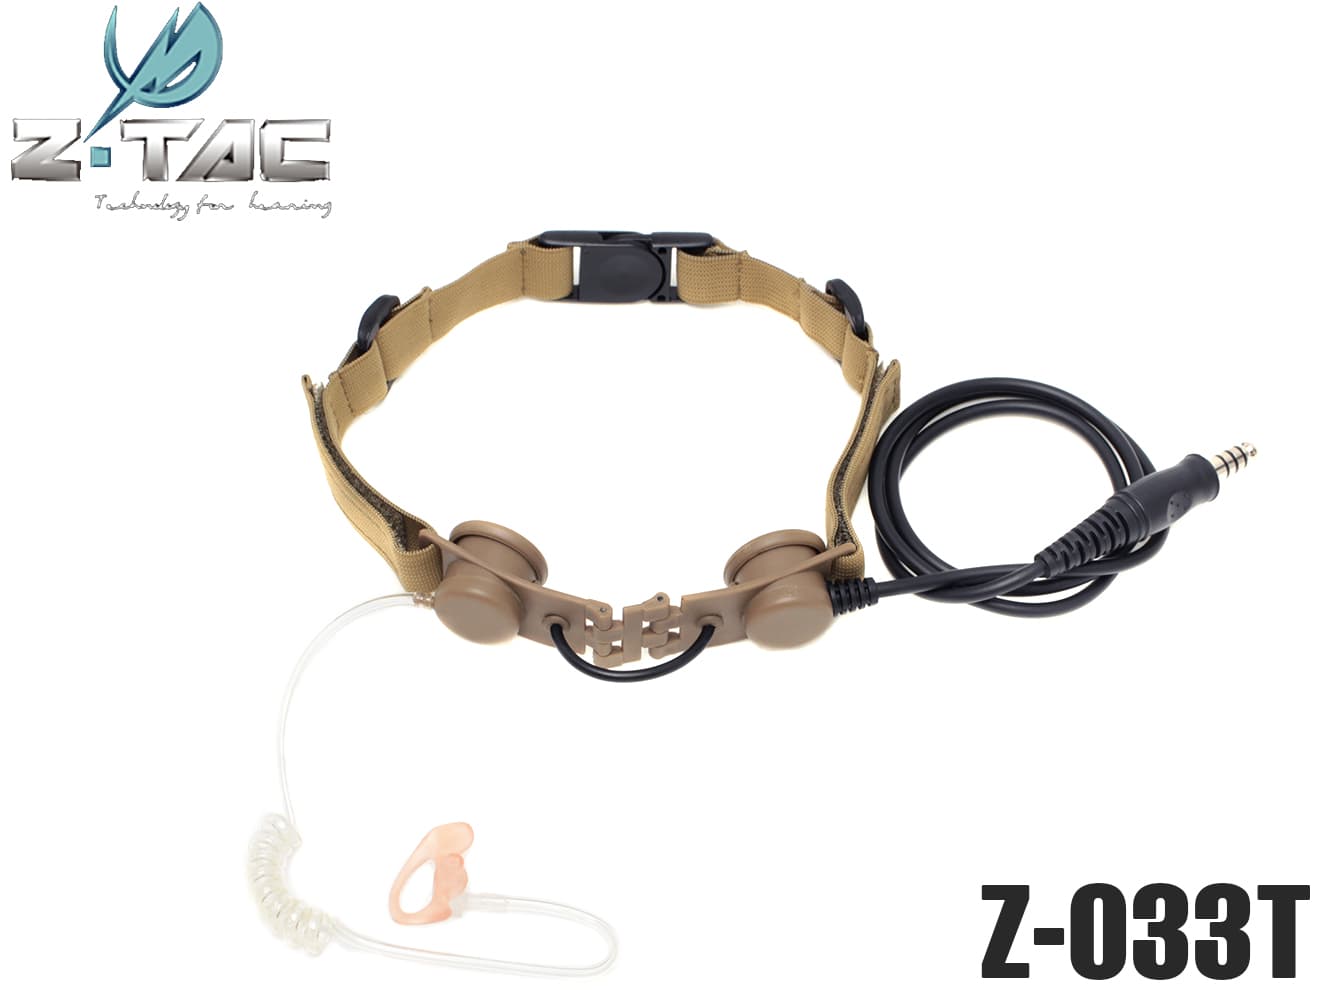 Z033-DE Z-TACTICAL Zタクティカル商品説明ITEM INFOZTACTICAL TACTICAL THROAT MIC本場SEALE隊員も愛用！タクティカルスロート(咽喉)ヘッドセットです。首に巻いて使用するヘッドセットなのでマスクやヘルメットなどに干渉しません。フルフェイスマスク使用時でも無線が使用可能になります！バンドに設置された二つのマイクが喉の振動を拾います！無線機からの受信音声は片耳イヤホンから聞くことが可能です。■ELEMENT社正規代理店につき安心です♪ミリタリーベースはELEMENT社の正規代理店です。ELEMENT・ZTACTICAL・AIM-O・nHelmet製品の正規品を各種ラインナップ！一部商品は正規代理店特約として1年保証付き！(製品により保証の規定が異なります。お気軽にお問い合わせください。)商品基本情報・スペックITEM SPEC●商品名 ： ZTACTICAL タクティカルスロートマイク TAN●商品番号 ： Z-033T●ブランド ： ZTACTICAL●カラー ： TAN注意事項ITEM NOTE∇商品固有の注意事項※ミリタリージャック対応ののPTTスイッチ(別離)と組み合わせ無線機と接続して下さい。∇ご購入時の留意事項商品はすべて点検してからのお届けになります。商品によってはパッケージの開封等を行う場合もございますことをご了承ください。※商品には万全を記しておりますが、万一不備な点がございましたら、お手数ですがお問い合わせフォームにてご連絡頂ますようお願い致します。なお、海外製品につきましては、輸入時についた若干の傷、痛み等が見られる場合がございます。 国内製品のような完全品をお求めの方はご遠慮下さい。※商品が適合外であった場合、またはお客様都合による交換・返品・返金は出来ません。よくお確かめの上、ご購入下さい。※モニター環境により、実際の商品の色と若干異なる場合がございますのでご了承下さい。※他サイトでも同時販売の為売り切れの際はご了承下さい。※売り切れの際は早急にご連絡させて頂きます。（当社休業日を除く）関連商品RELATED ITEMZ-TACTICAL タクティカルスロートマイク BK[Z-033B]Z-TACTICAL タクティカルスロートマイク GRAY[Z-033G]Z-TACTICAL Pt PTTスイッチ(Z 112)[Z-112I]Z-TACTICAL NEXUS U94タイプ PTTスイッチ(Z 113)[Z-113I]Z-TACTICAL TCI TACTICALタイプ PTTスイッチ(Z 114)[Z-114I]【検索キーワード】：Z033-DE ZTACTICAL タクティカル I-COM ケンウッド KENWOOD モトローラ PRR PTT 無線機 トランシーバー Z 033 ミリタリー サバゲー サバイバルゲーム